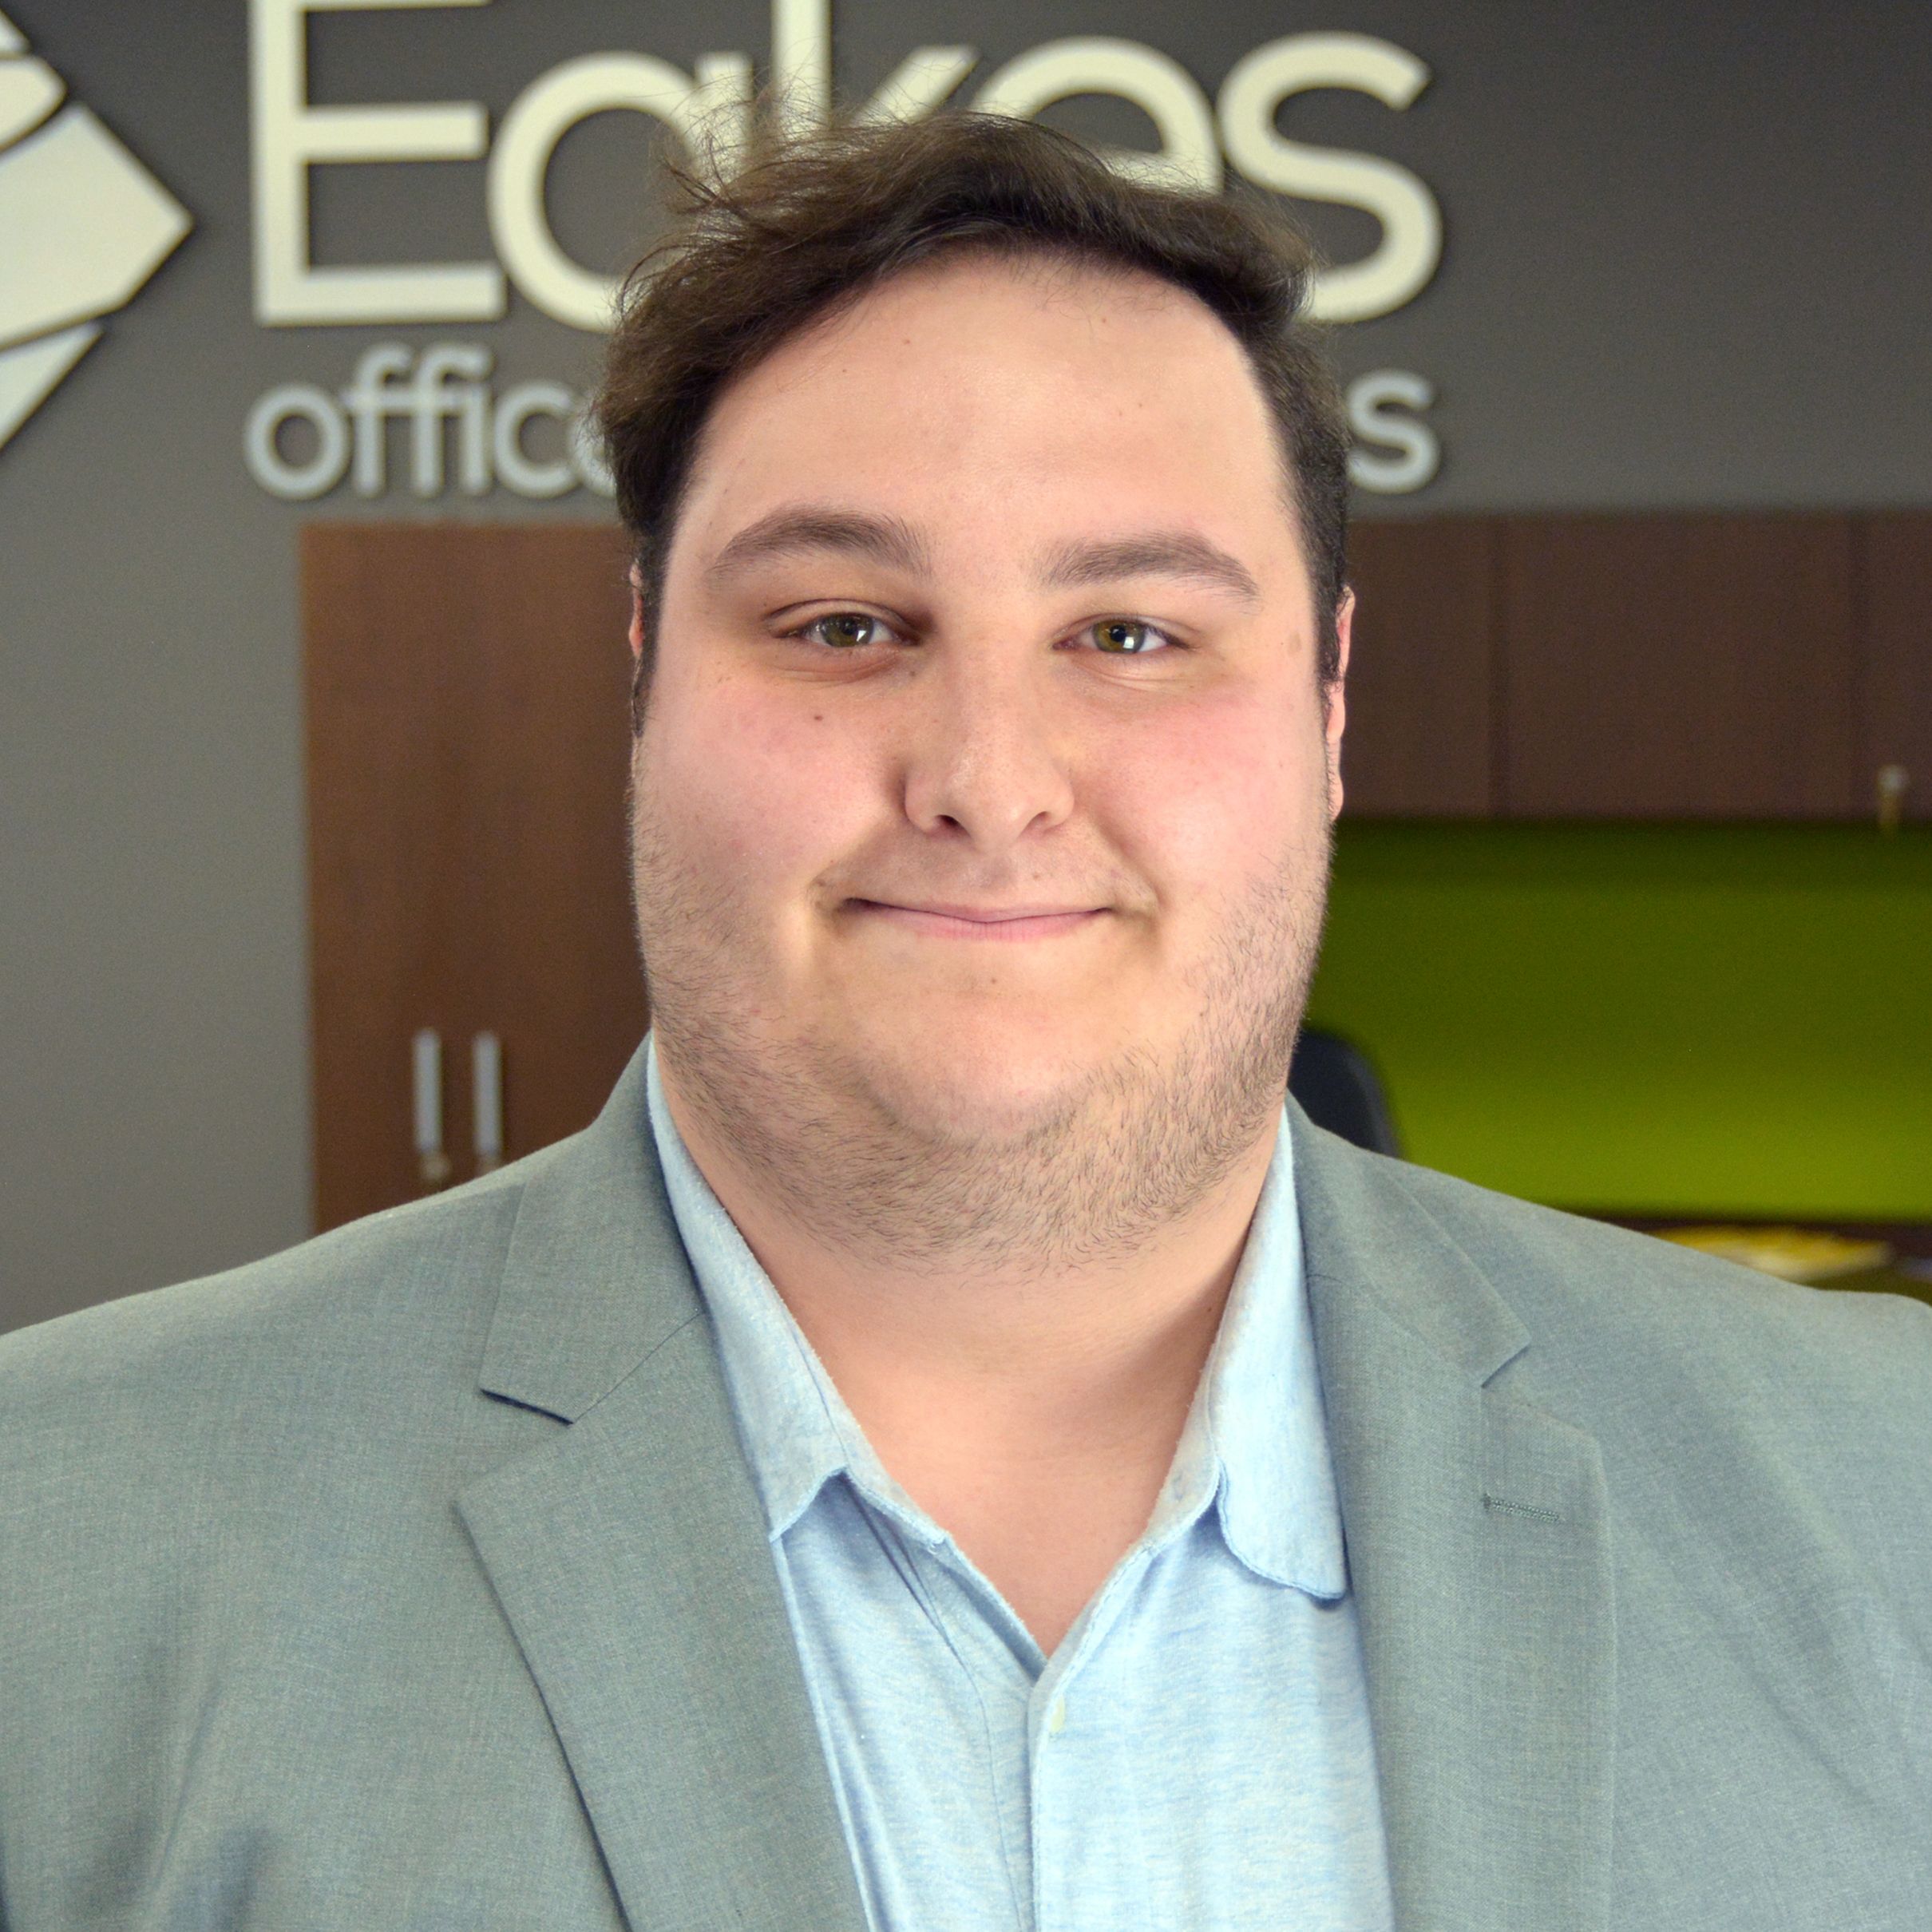 Mason Novak, Eakes Office Solutions